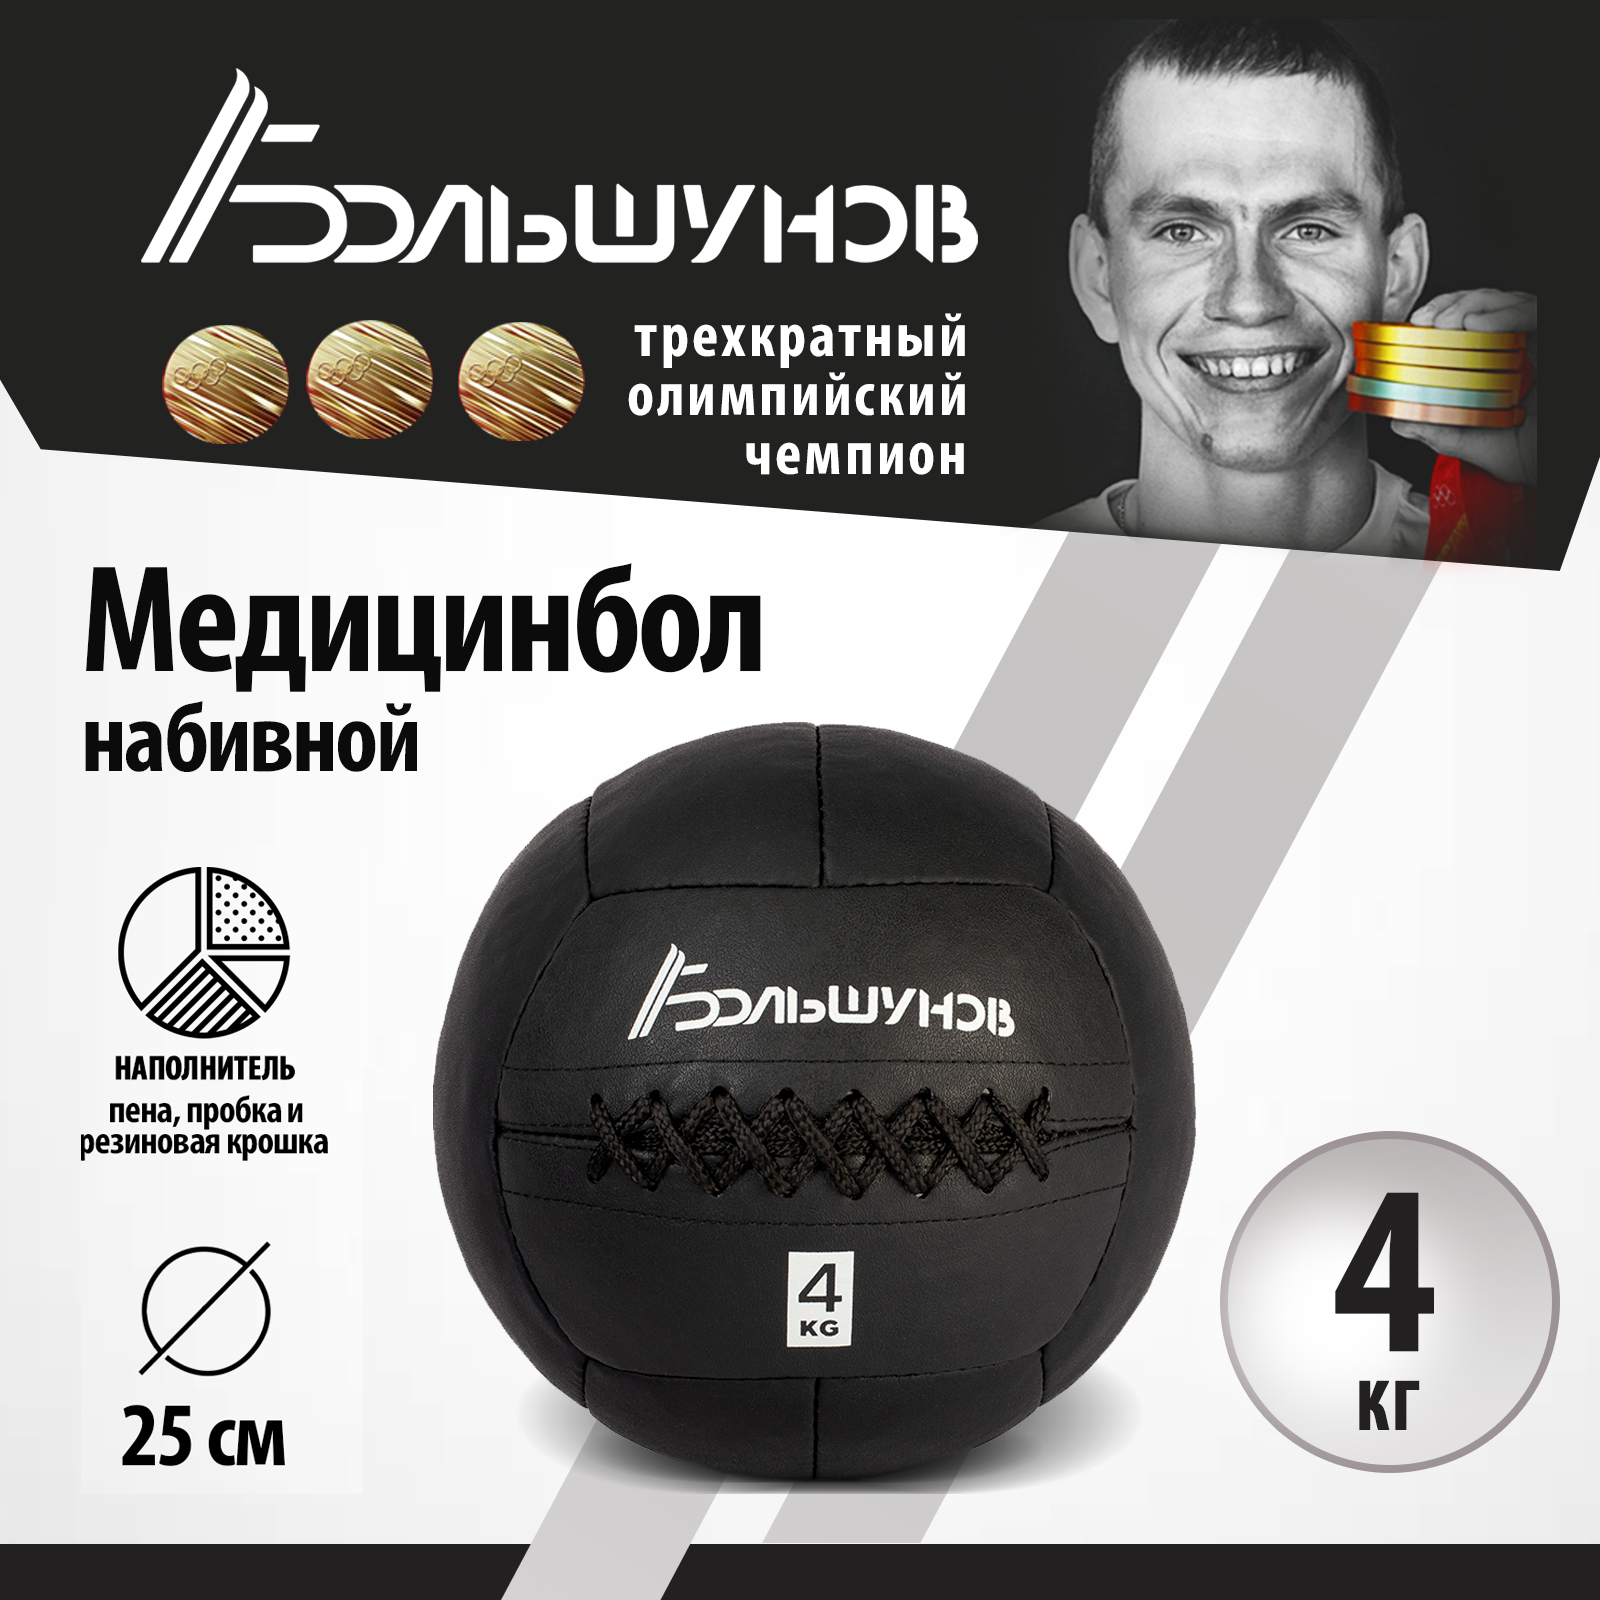 Медбол Александр Большунов, 25см, 4 кг